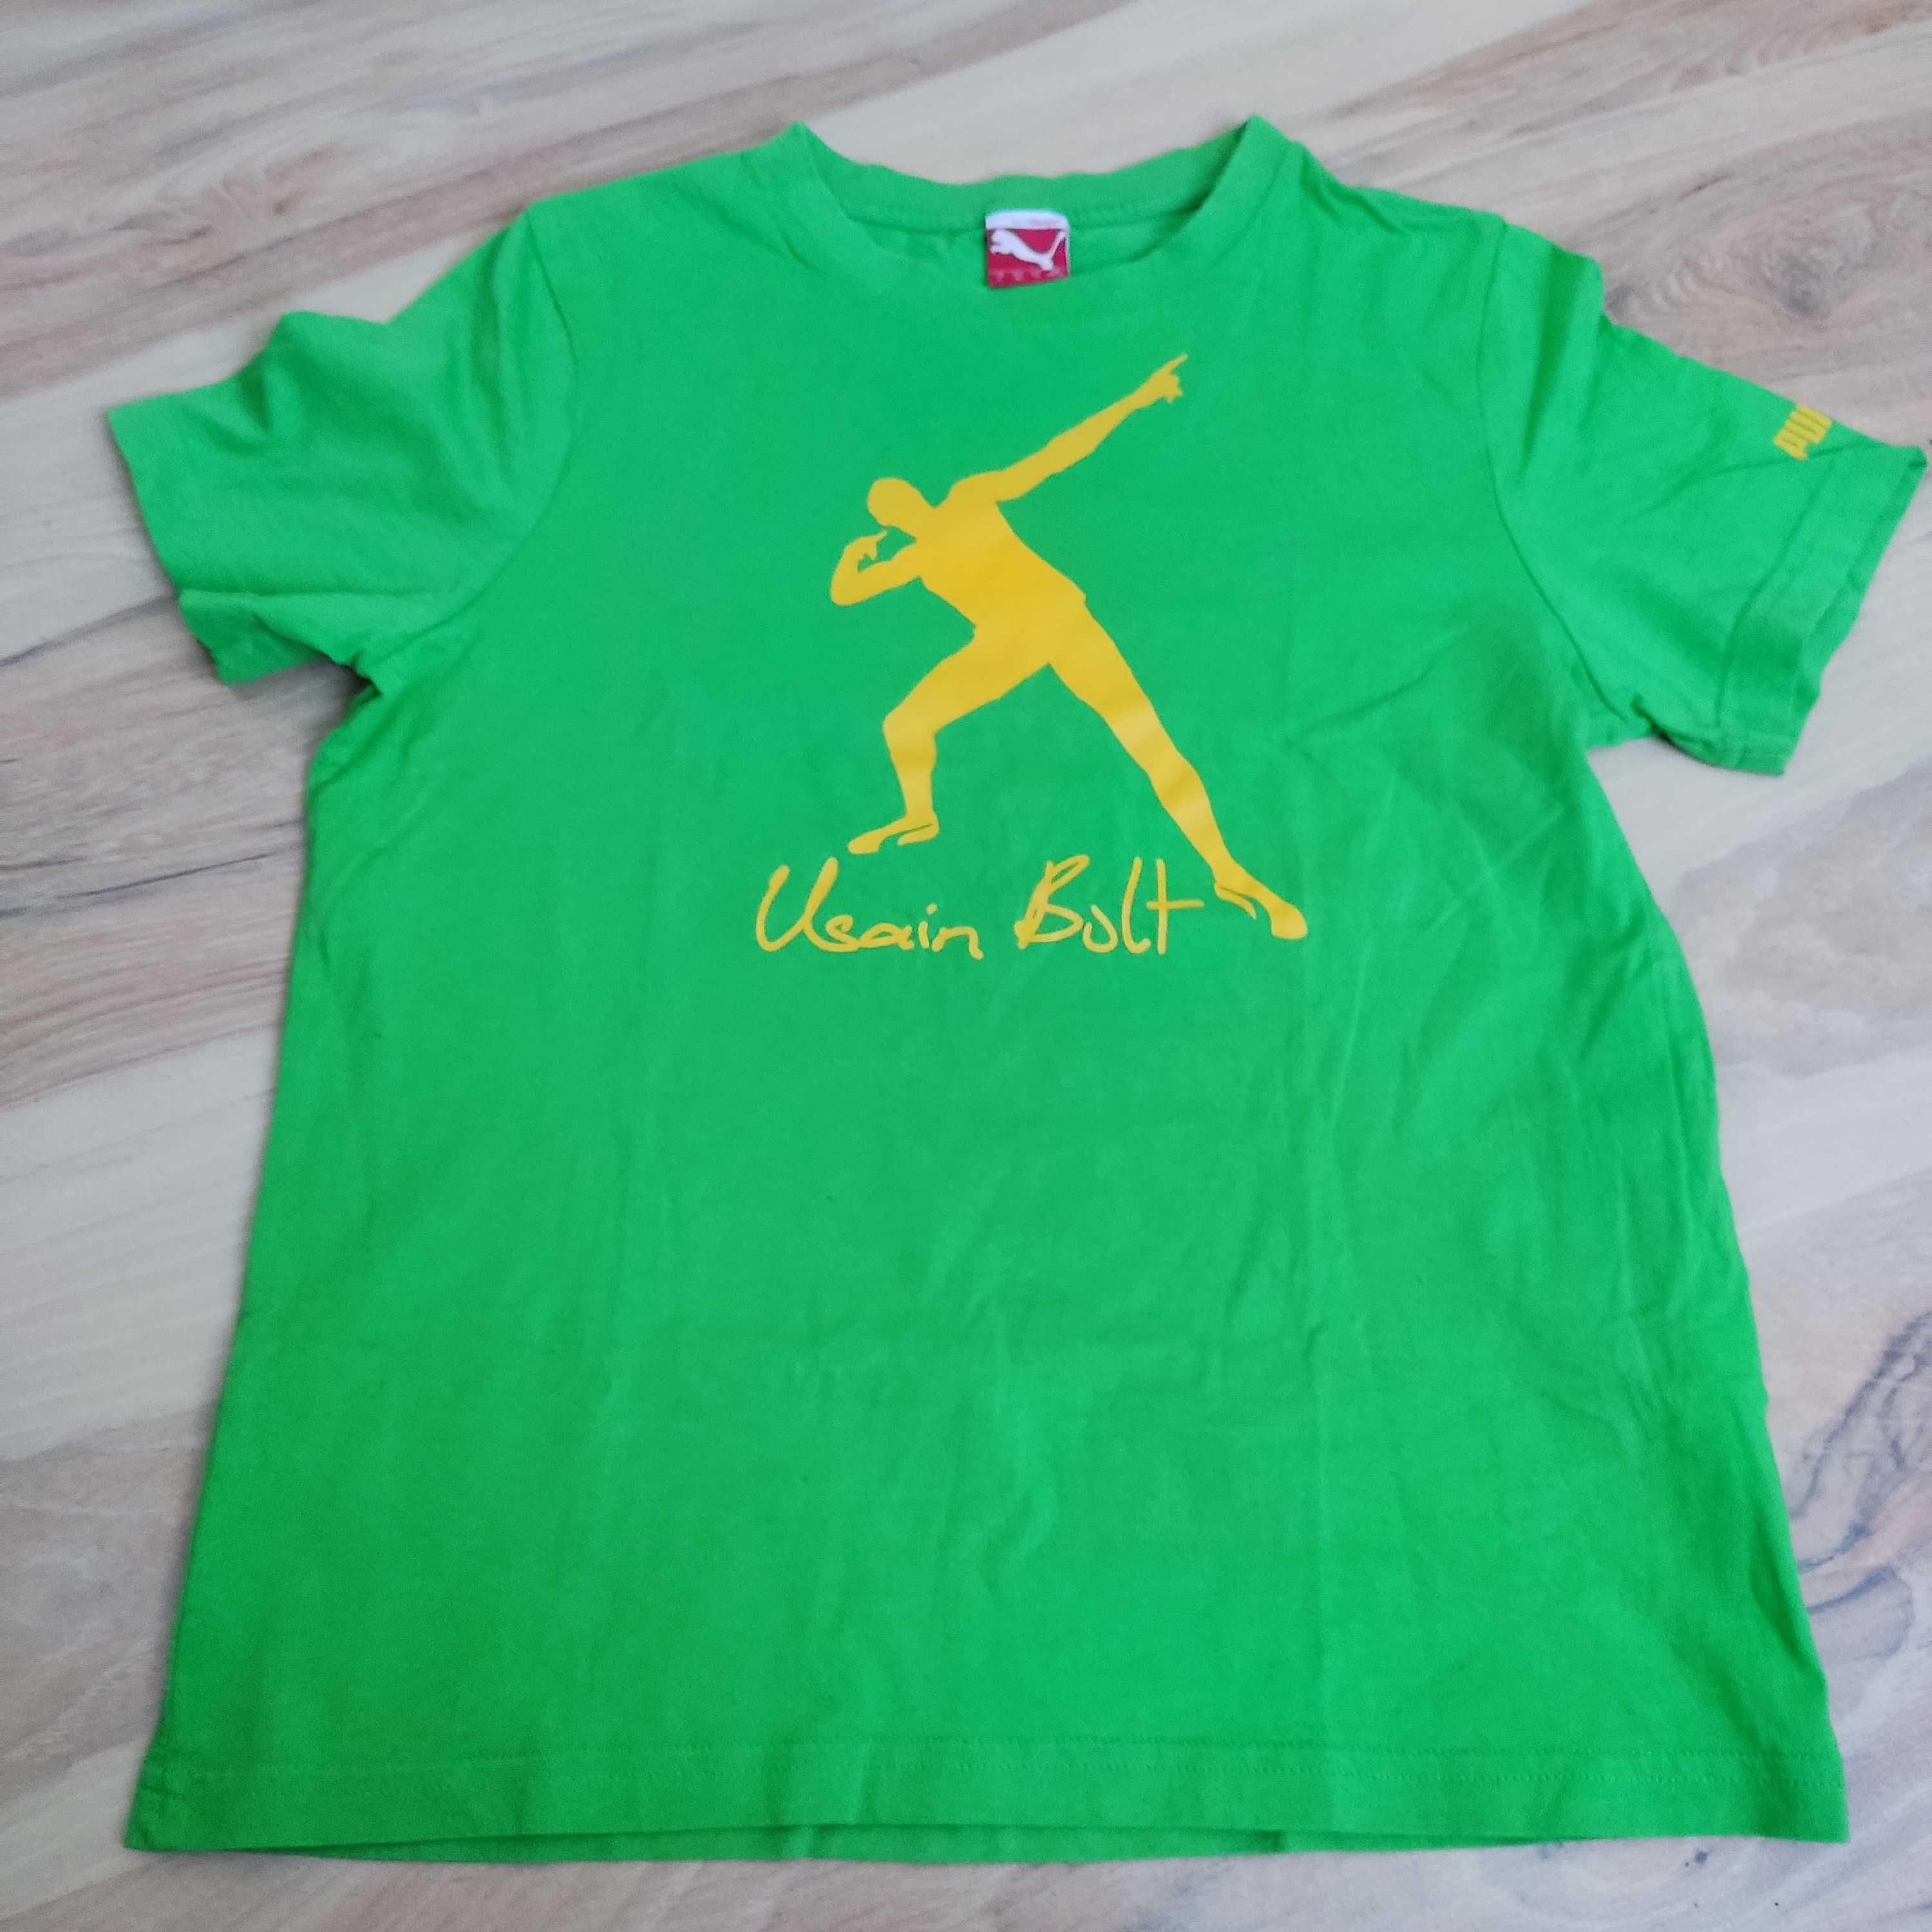 Puma t-shirt Usain Bolt r. 152